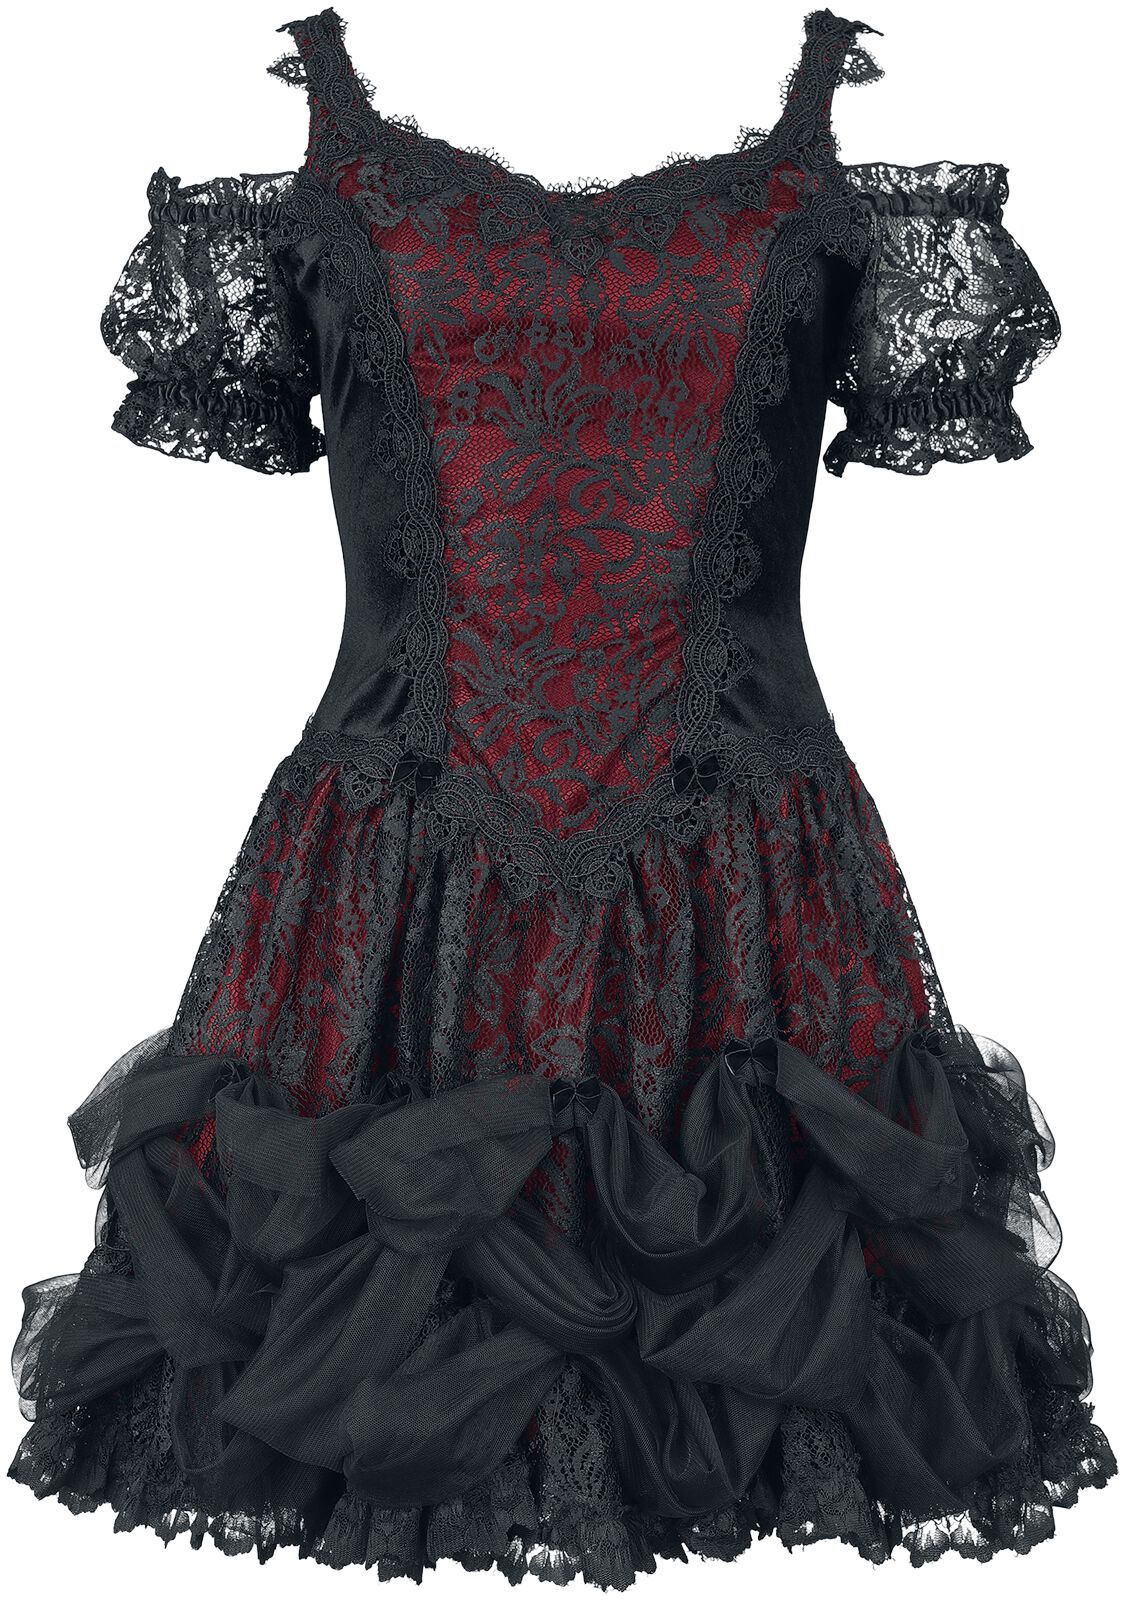 Robe courte Gothic de Sinister Gothic - Robe Gothique - M à XXL - pour Femme - noir/rouge